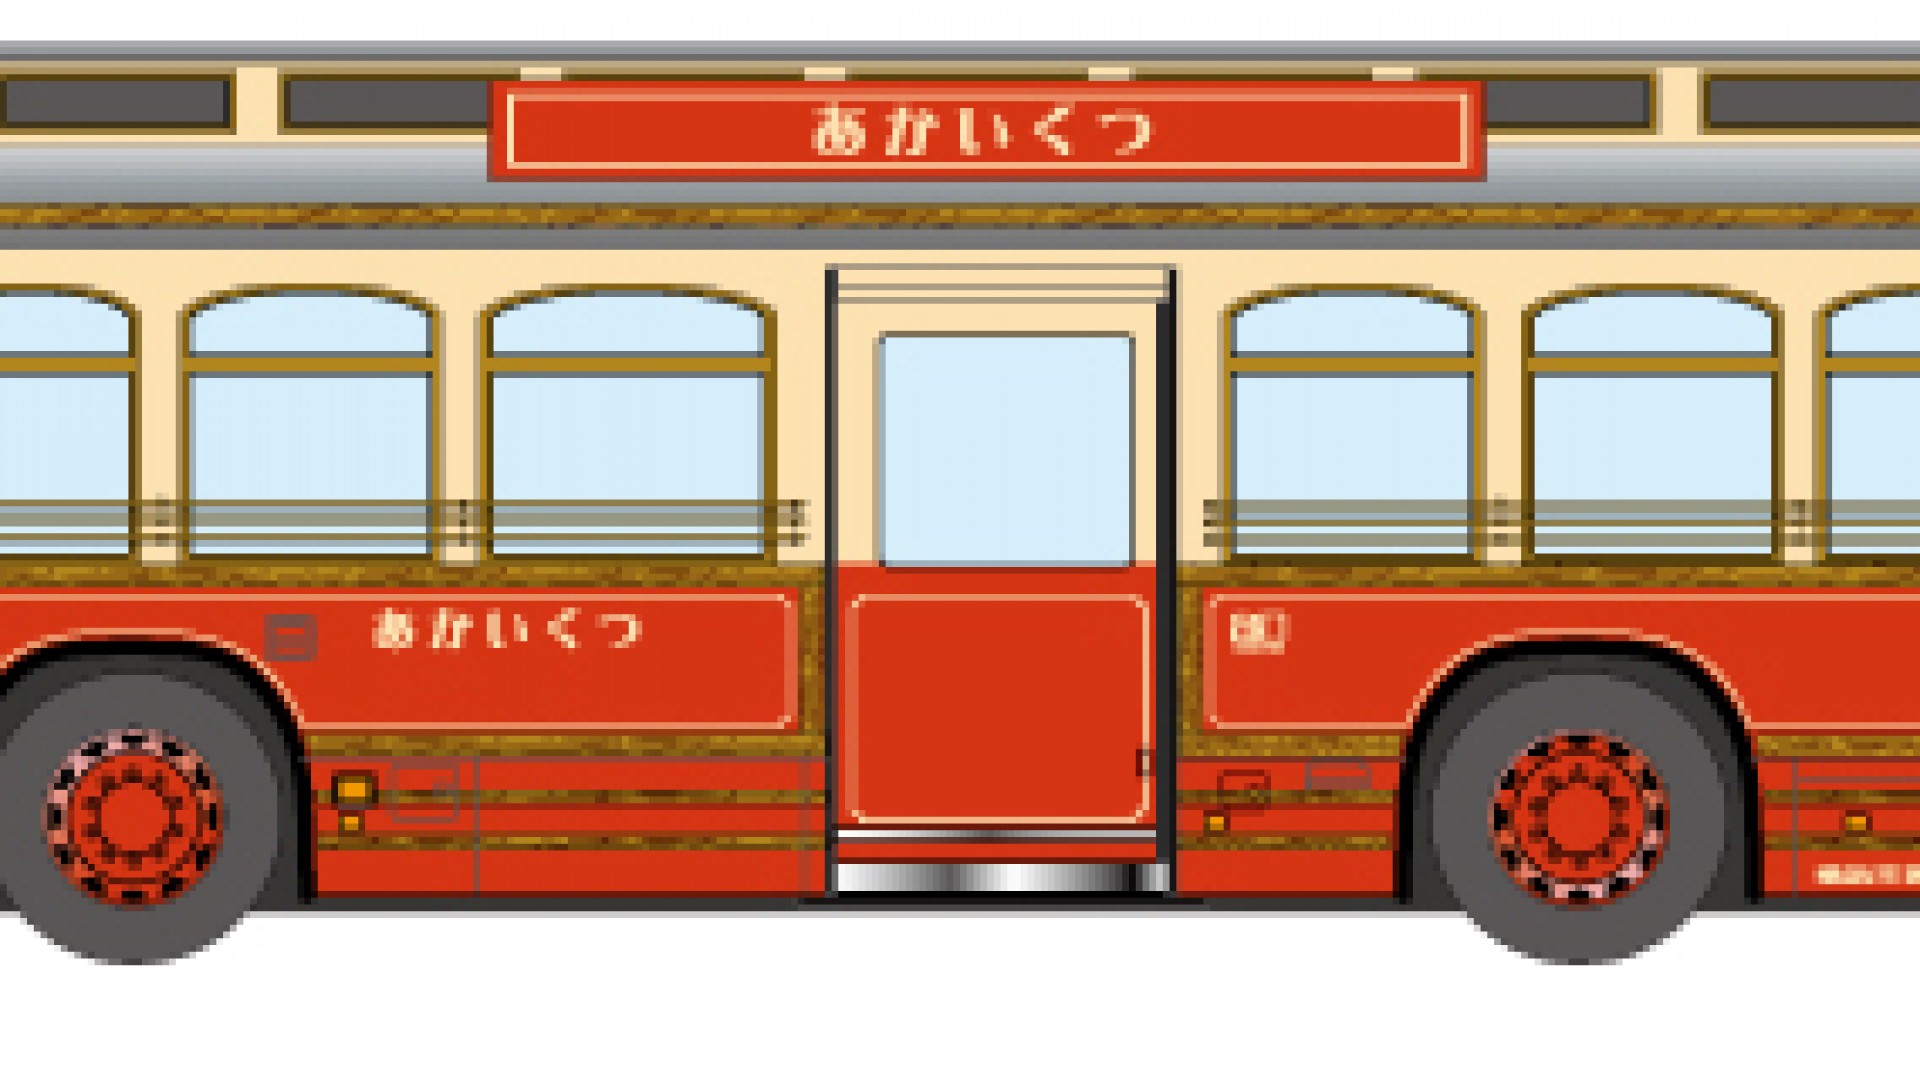 Erkunden Sie touristische Orte mit dem im Retro-Stil gehaltenen "Akai Kutsu" Bus